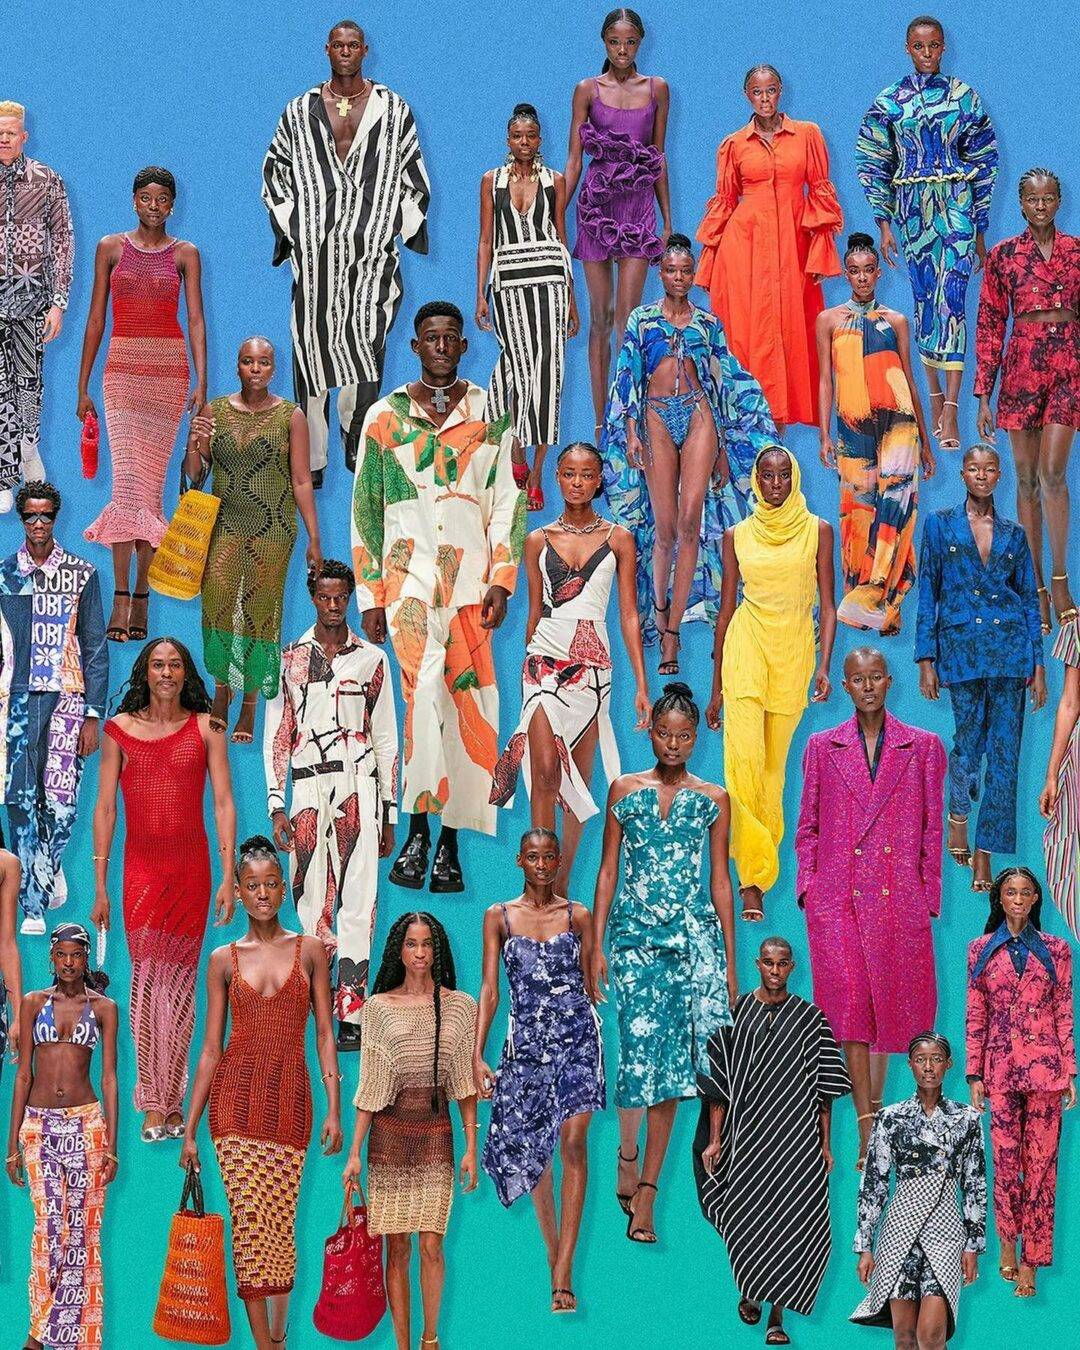 Perspectives de journaliste sur la mode africaine